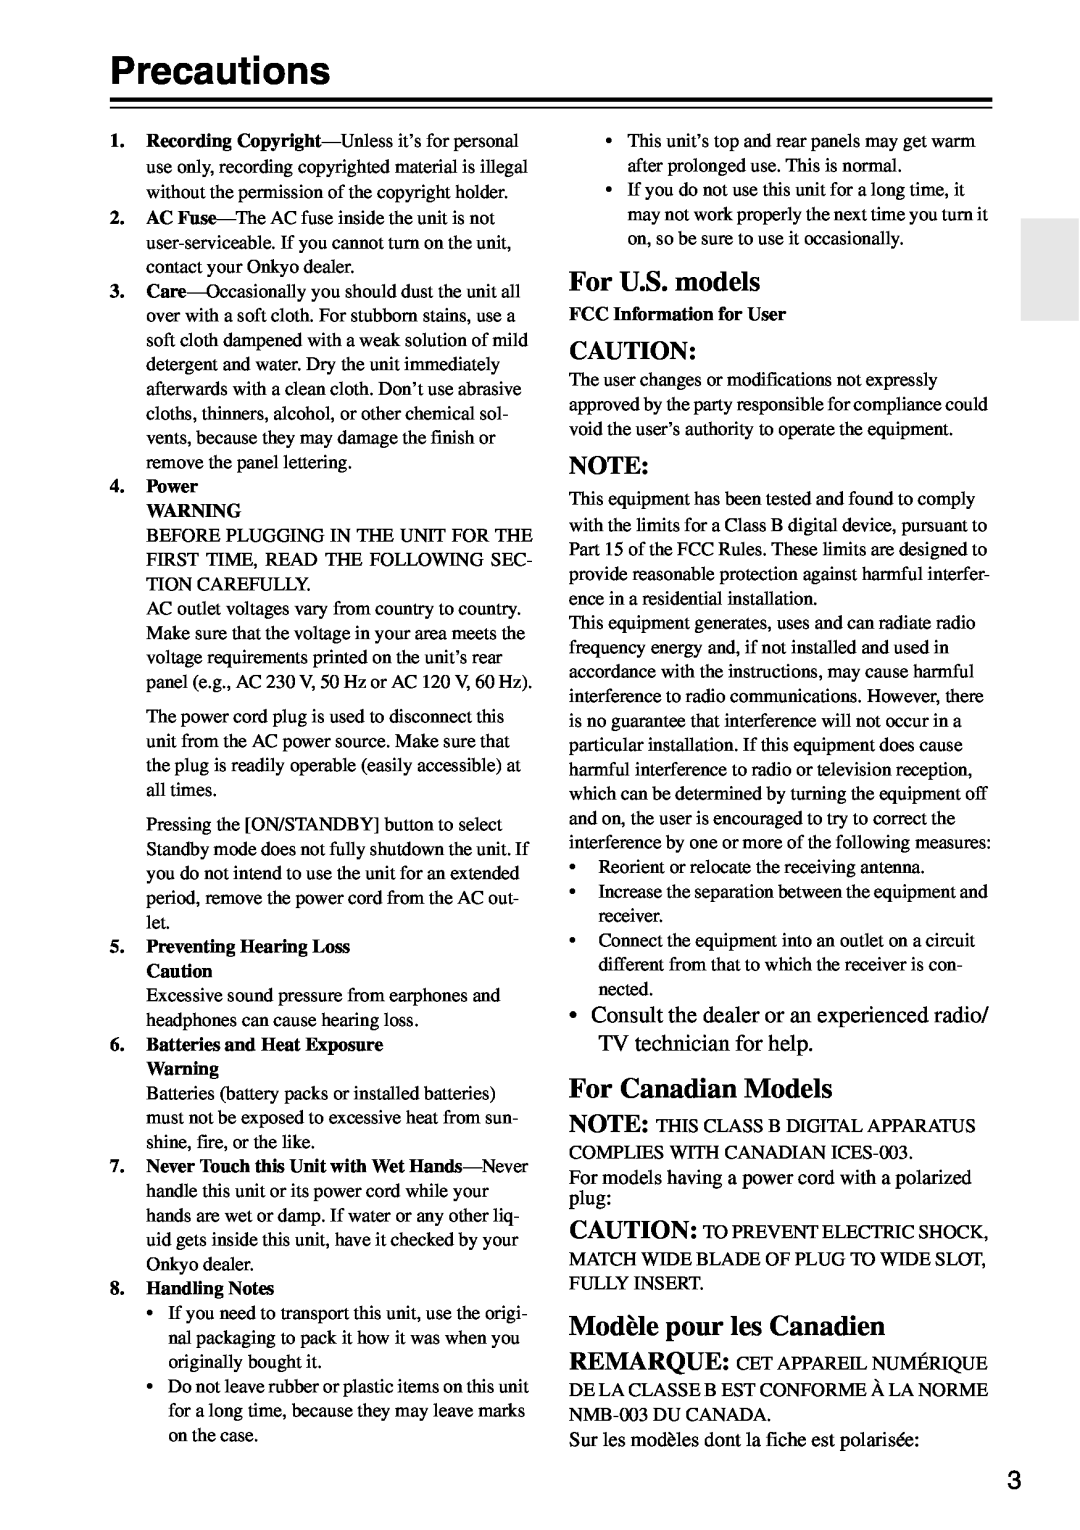 Onkyo HTX-22HDXST Precautions, For U.S. models, For Canadian Models, Modèle pour les Canadien, Power, Handling Notes 